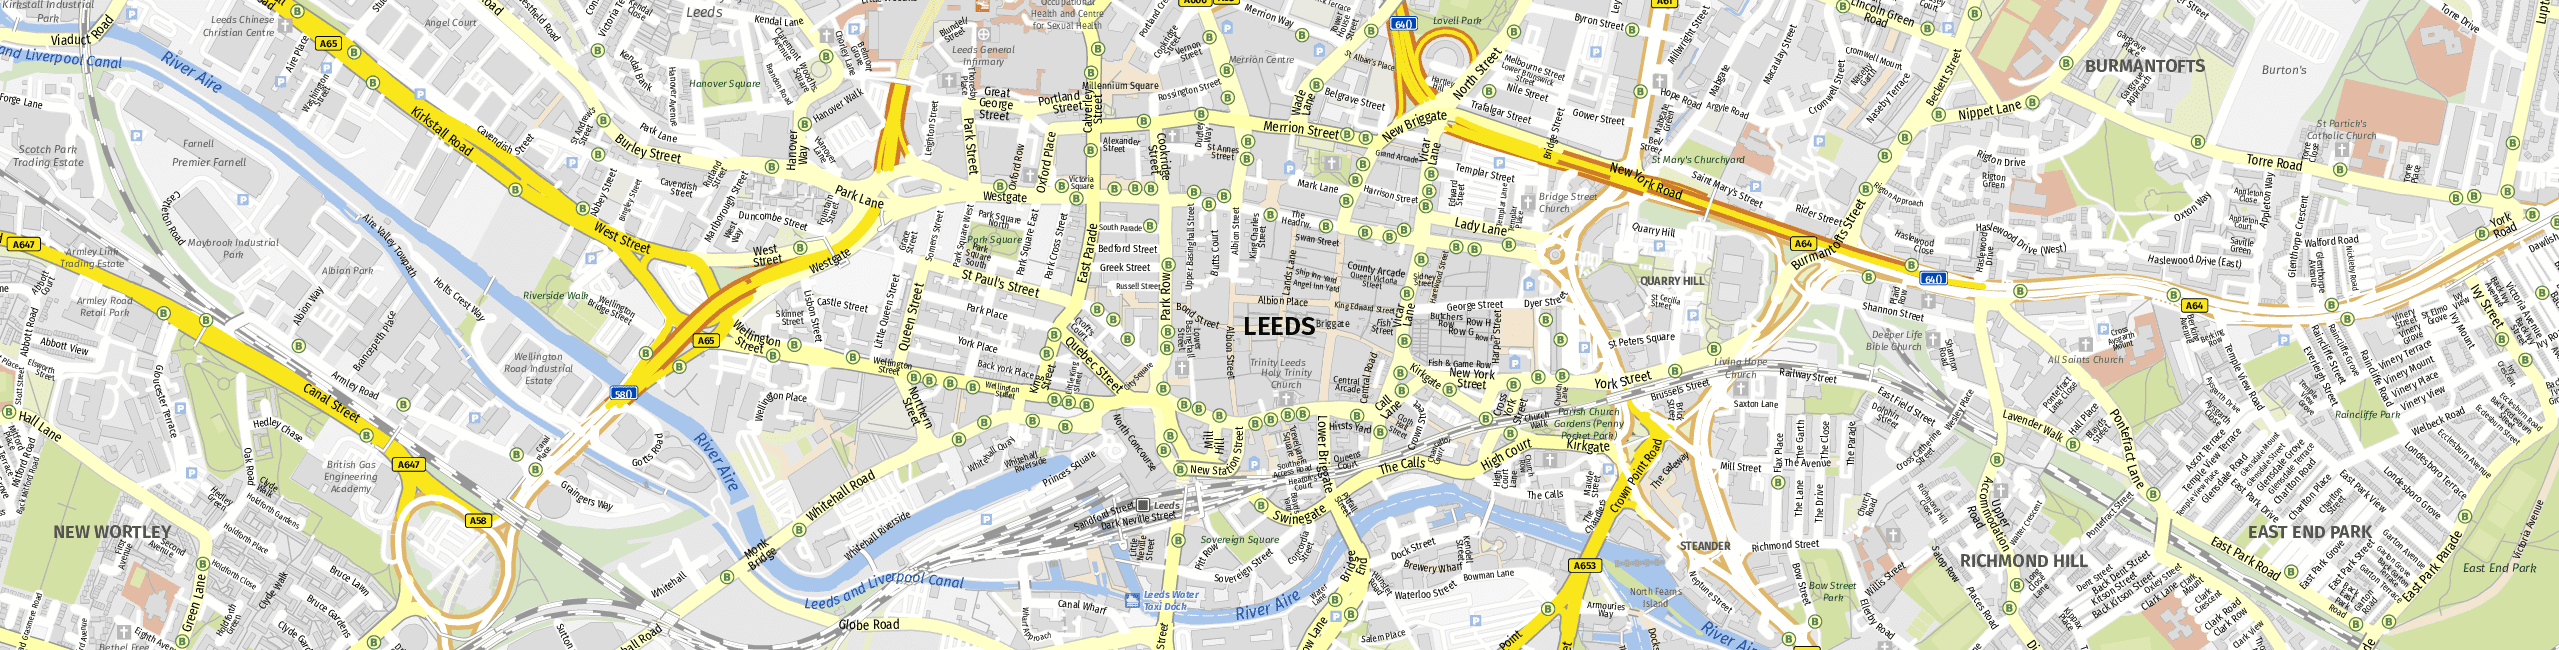 Stadtplan Leeds zum Downloaden.